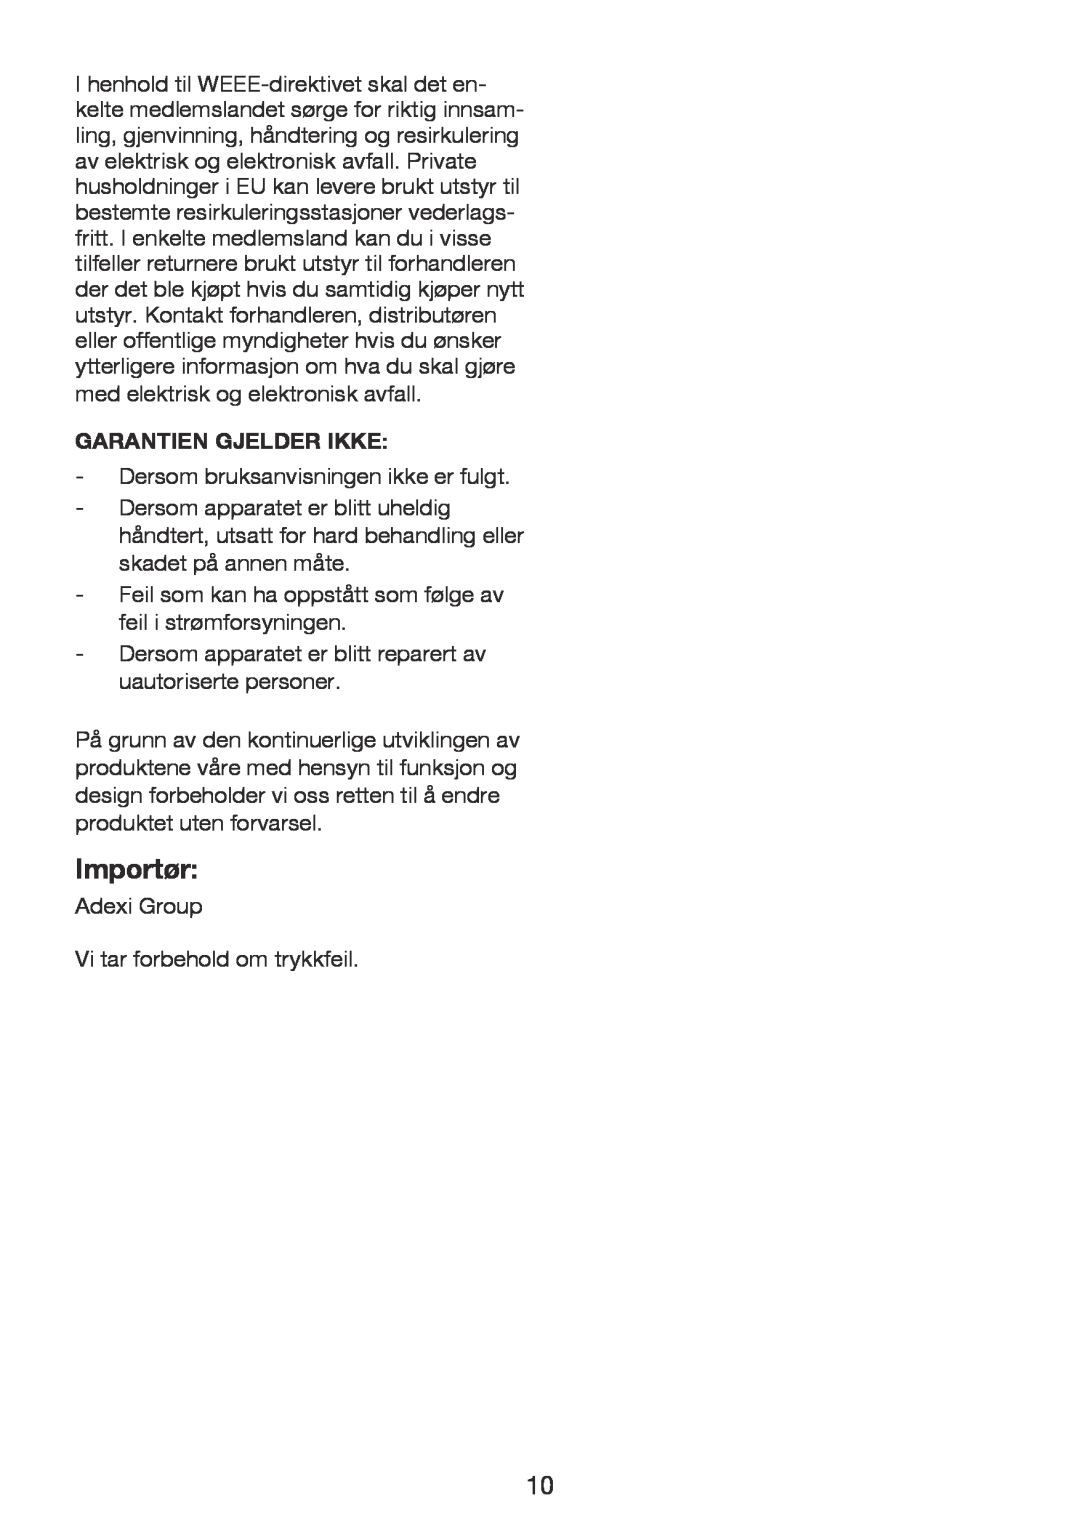 Exido 246-024 manual Importør, Garantien Gjelder Ikke 